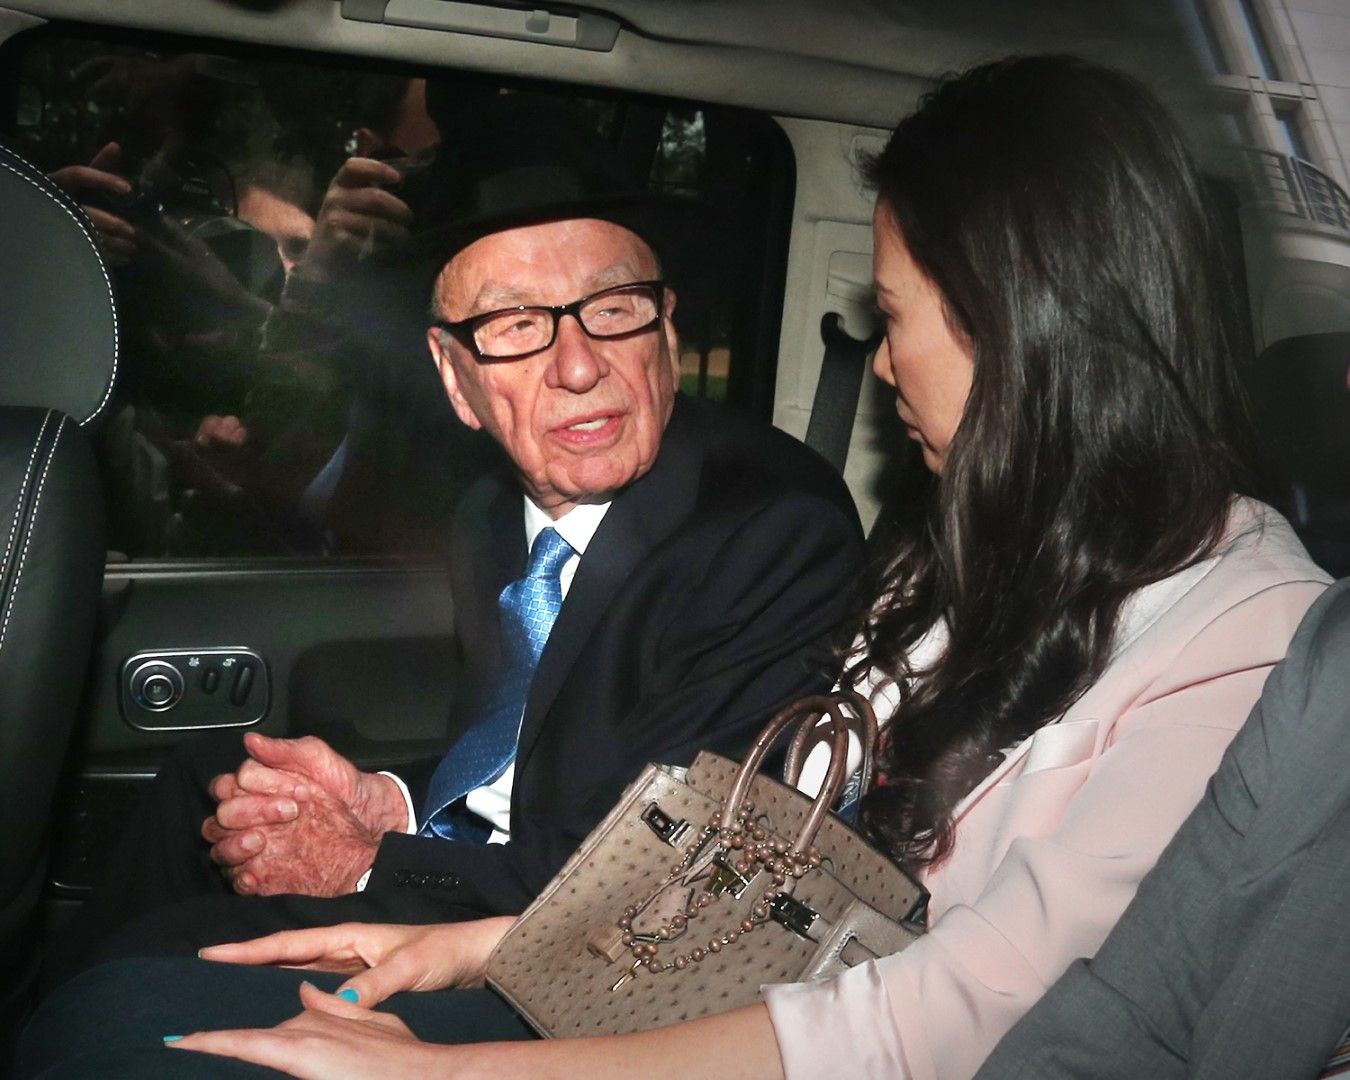 Рупърт Мърдок гледа към съпругата си Уенди Денг Мърдок в автомобила им, след като той даде показания в Кралския съд на 26 април 2012 г. Разследването се ръководи от лорд Джъстис Левсън и разглежда културата, практиката и етиката на пресата в Обединеното кралство